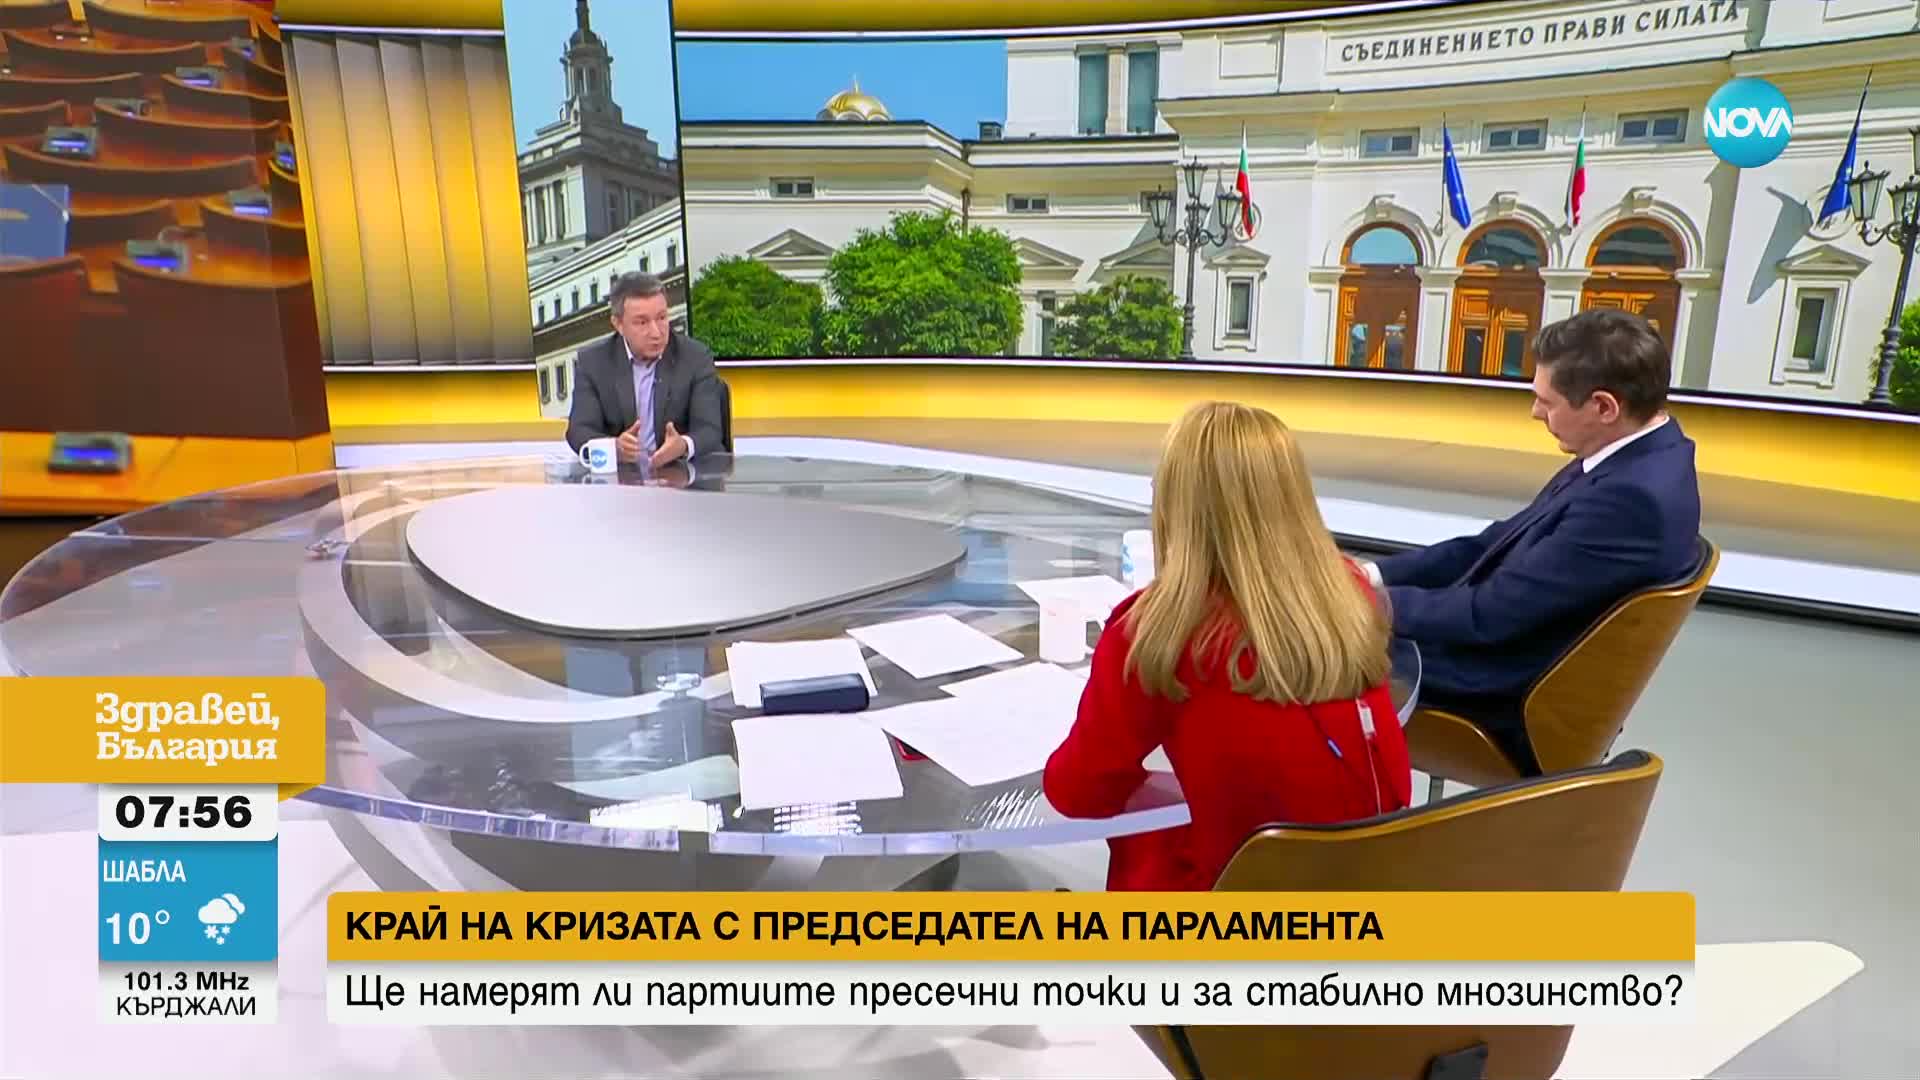 Янаки Стоилов: За да бъде сменен, председателят на НС трябва първо да подаде оставка